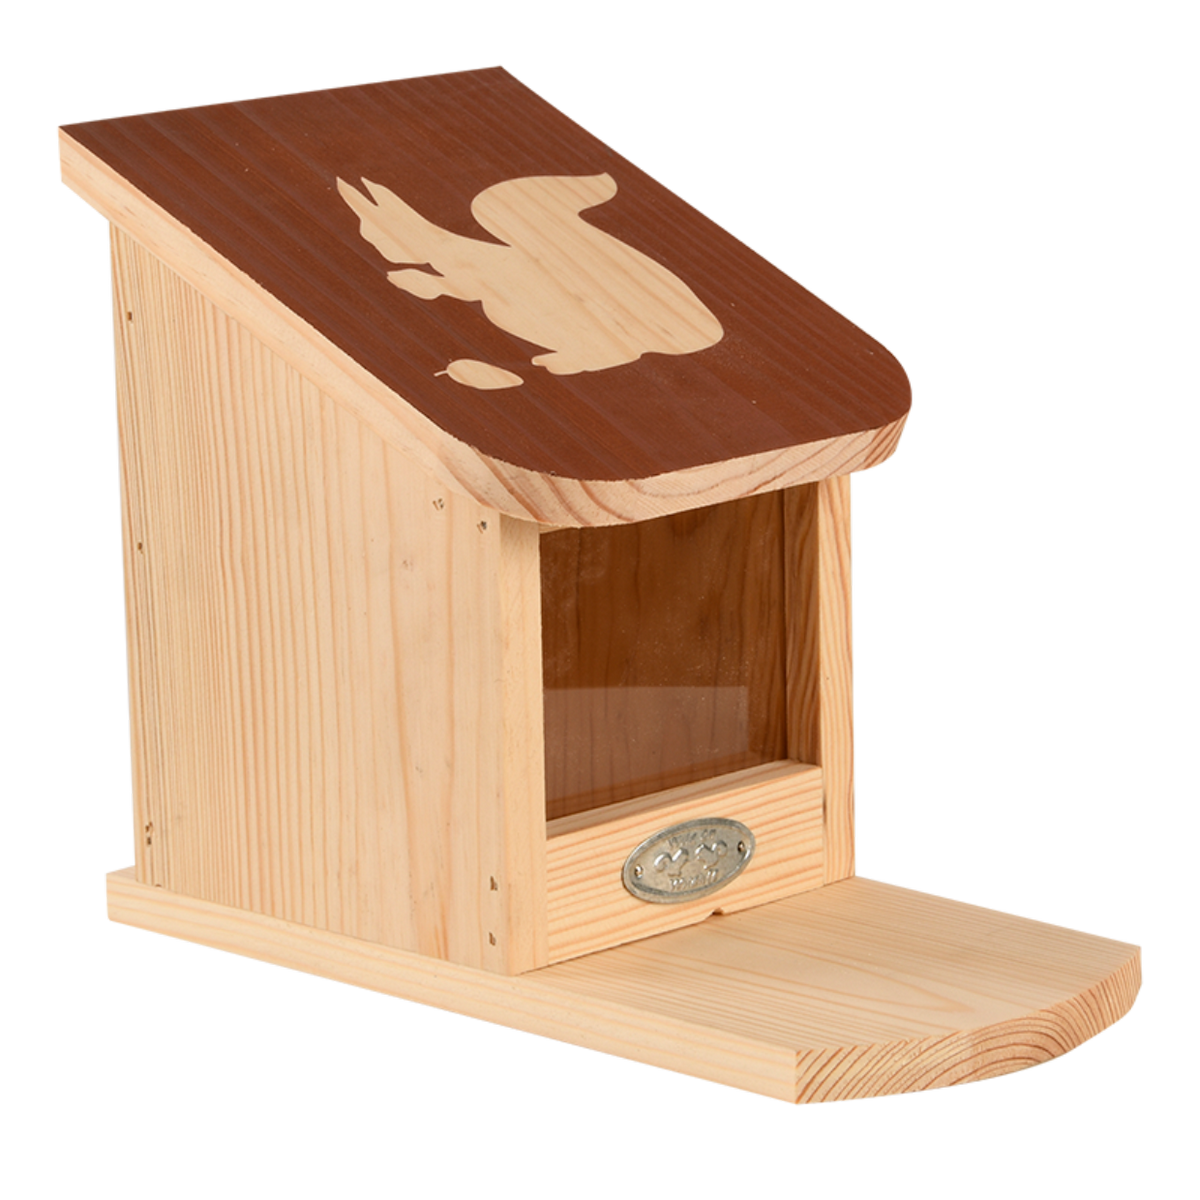 esschert design mangeoir pour ecureuil en bois une idee cadeau chez ugo et lea (5)